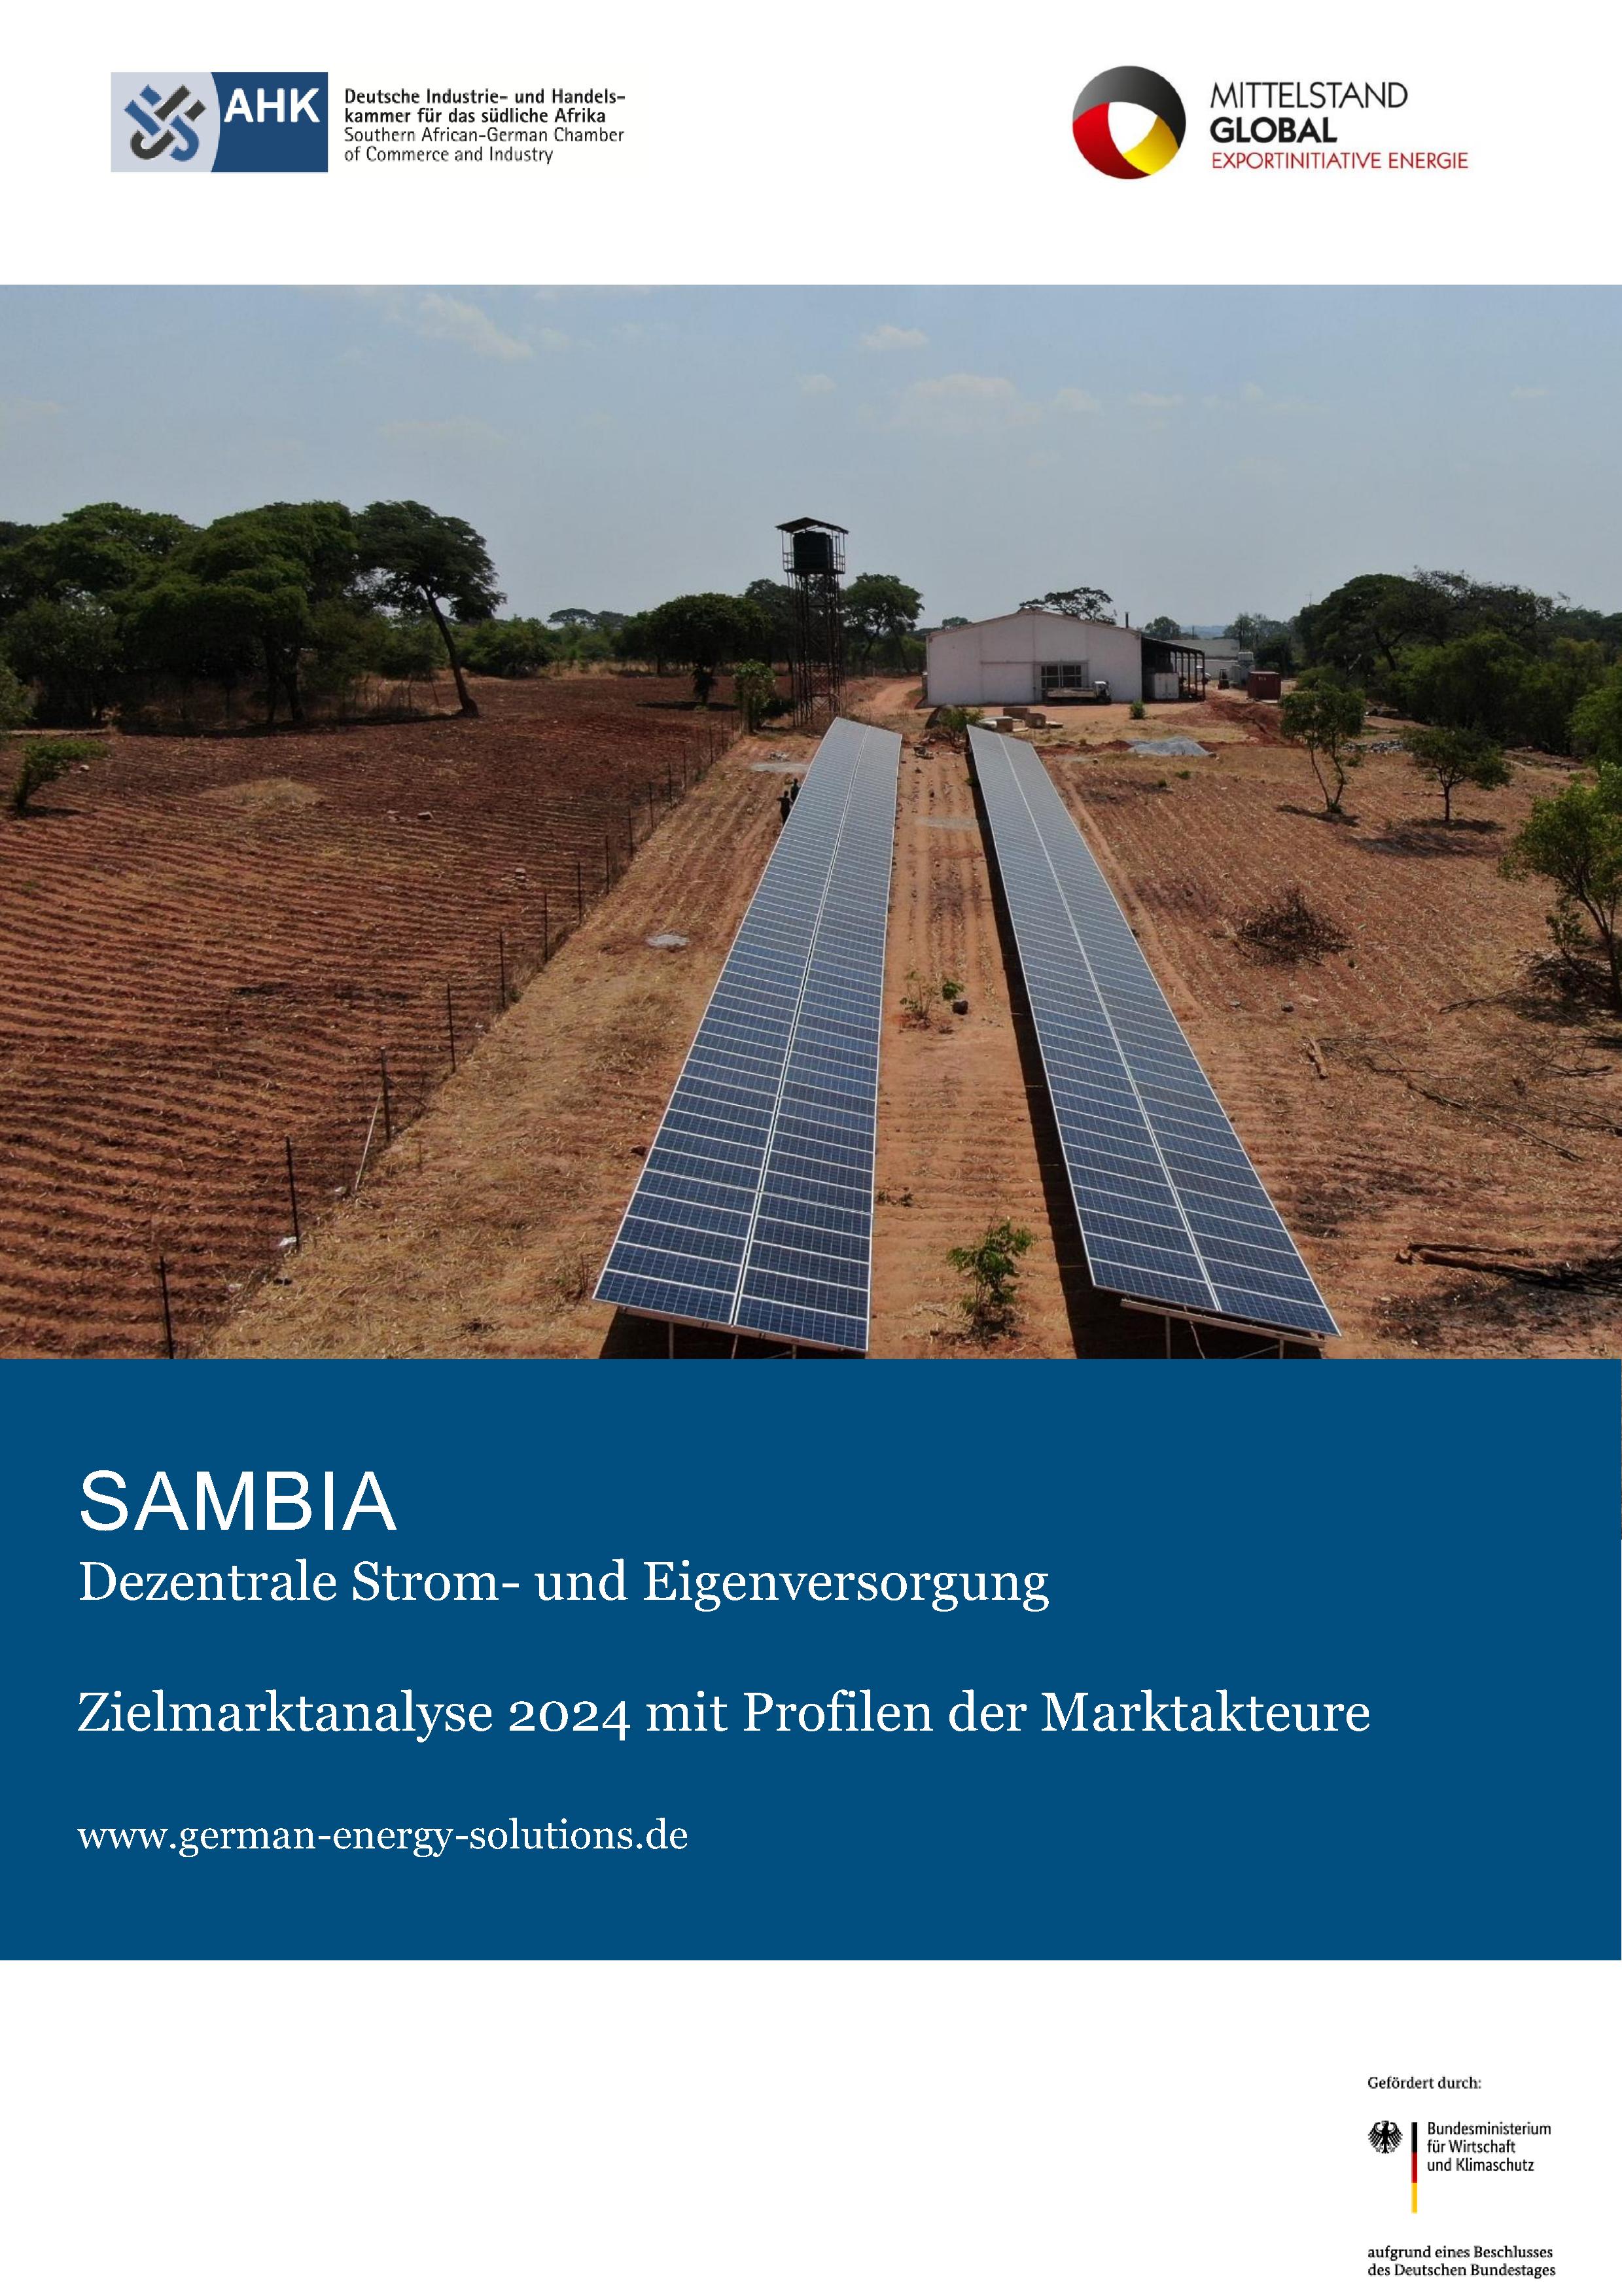 Dezentrale Strom- und Eigenversorgung in Sambia